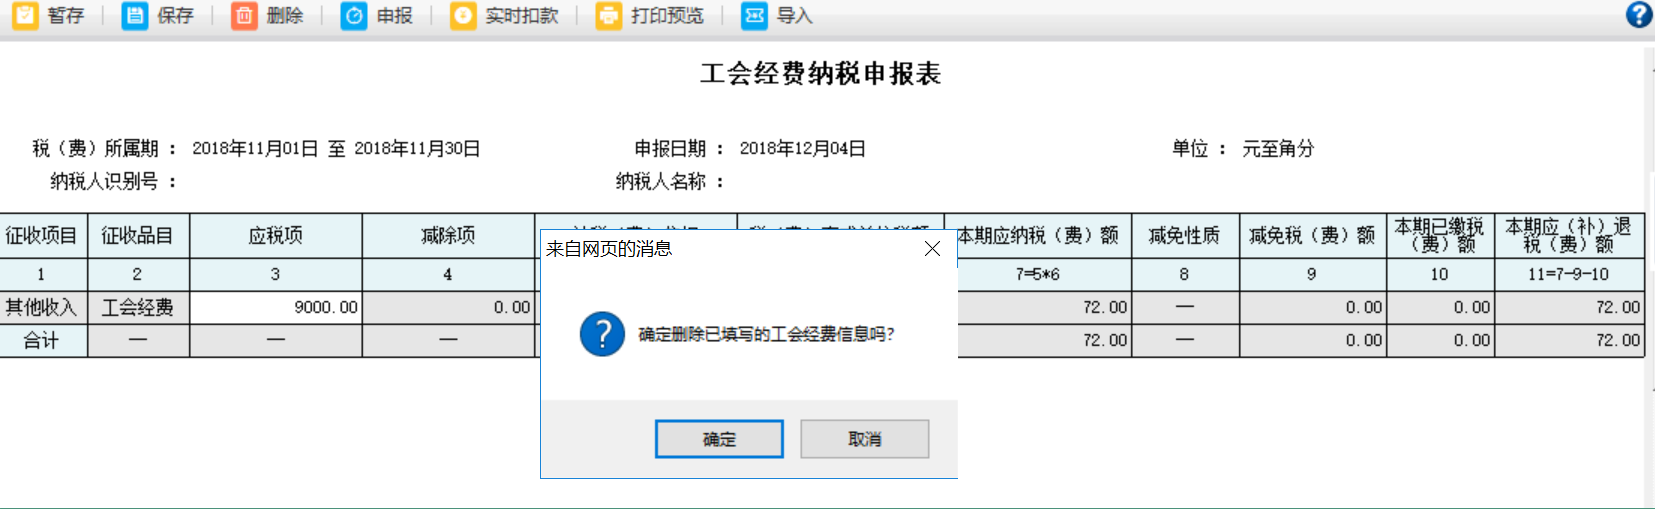 河南省电子税务局工会经费纳税申报表申报记录被删除